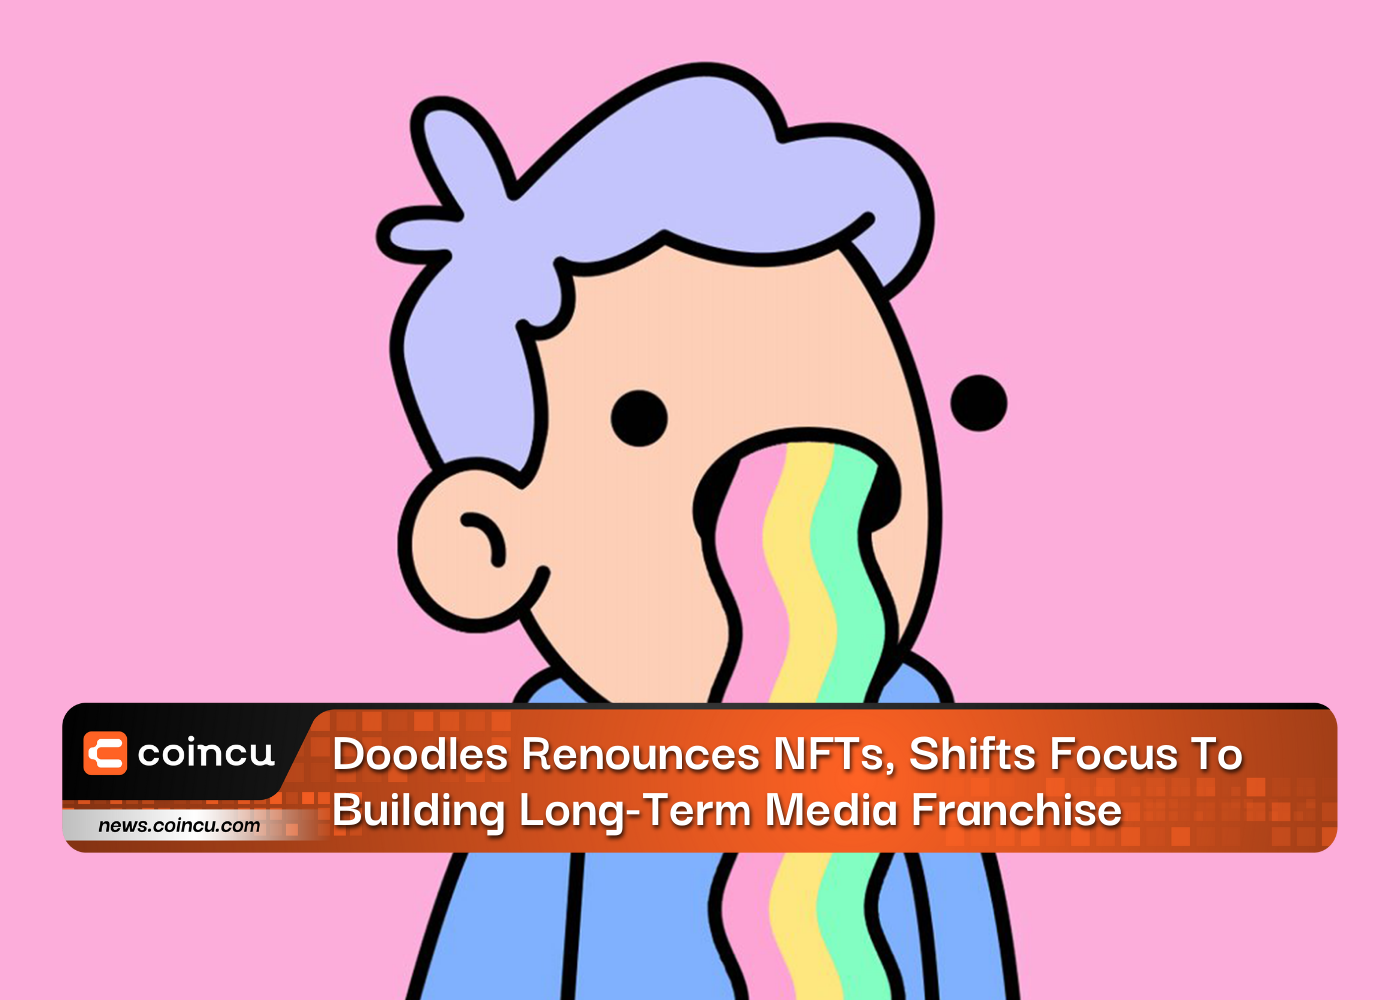 Doodles Renounces NFTs, Shifts Focus To Building Long-Term Media Franchise